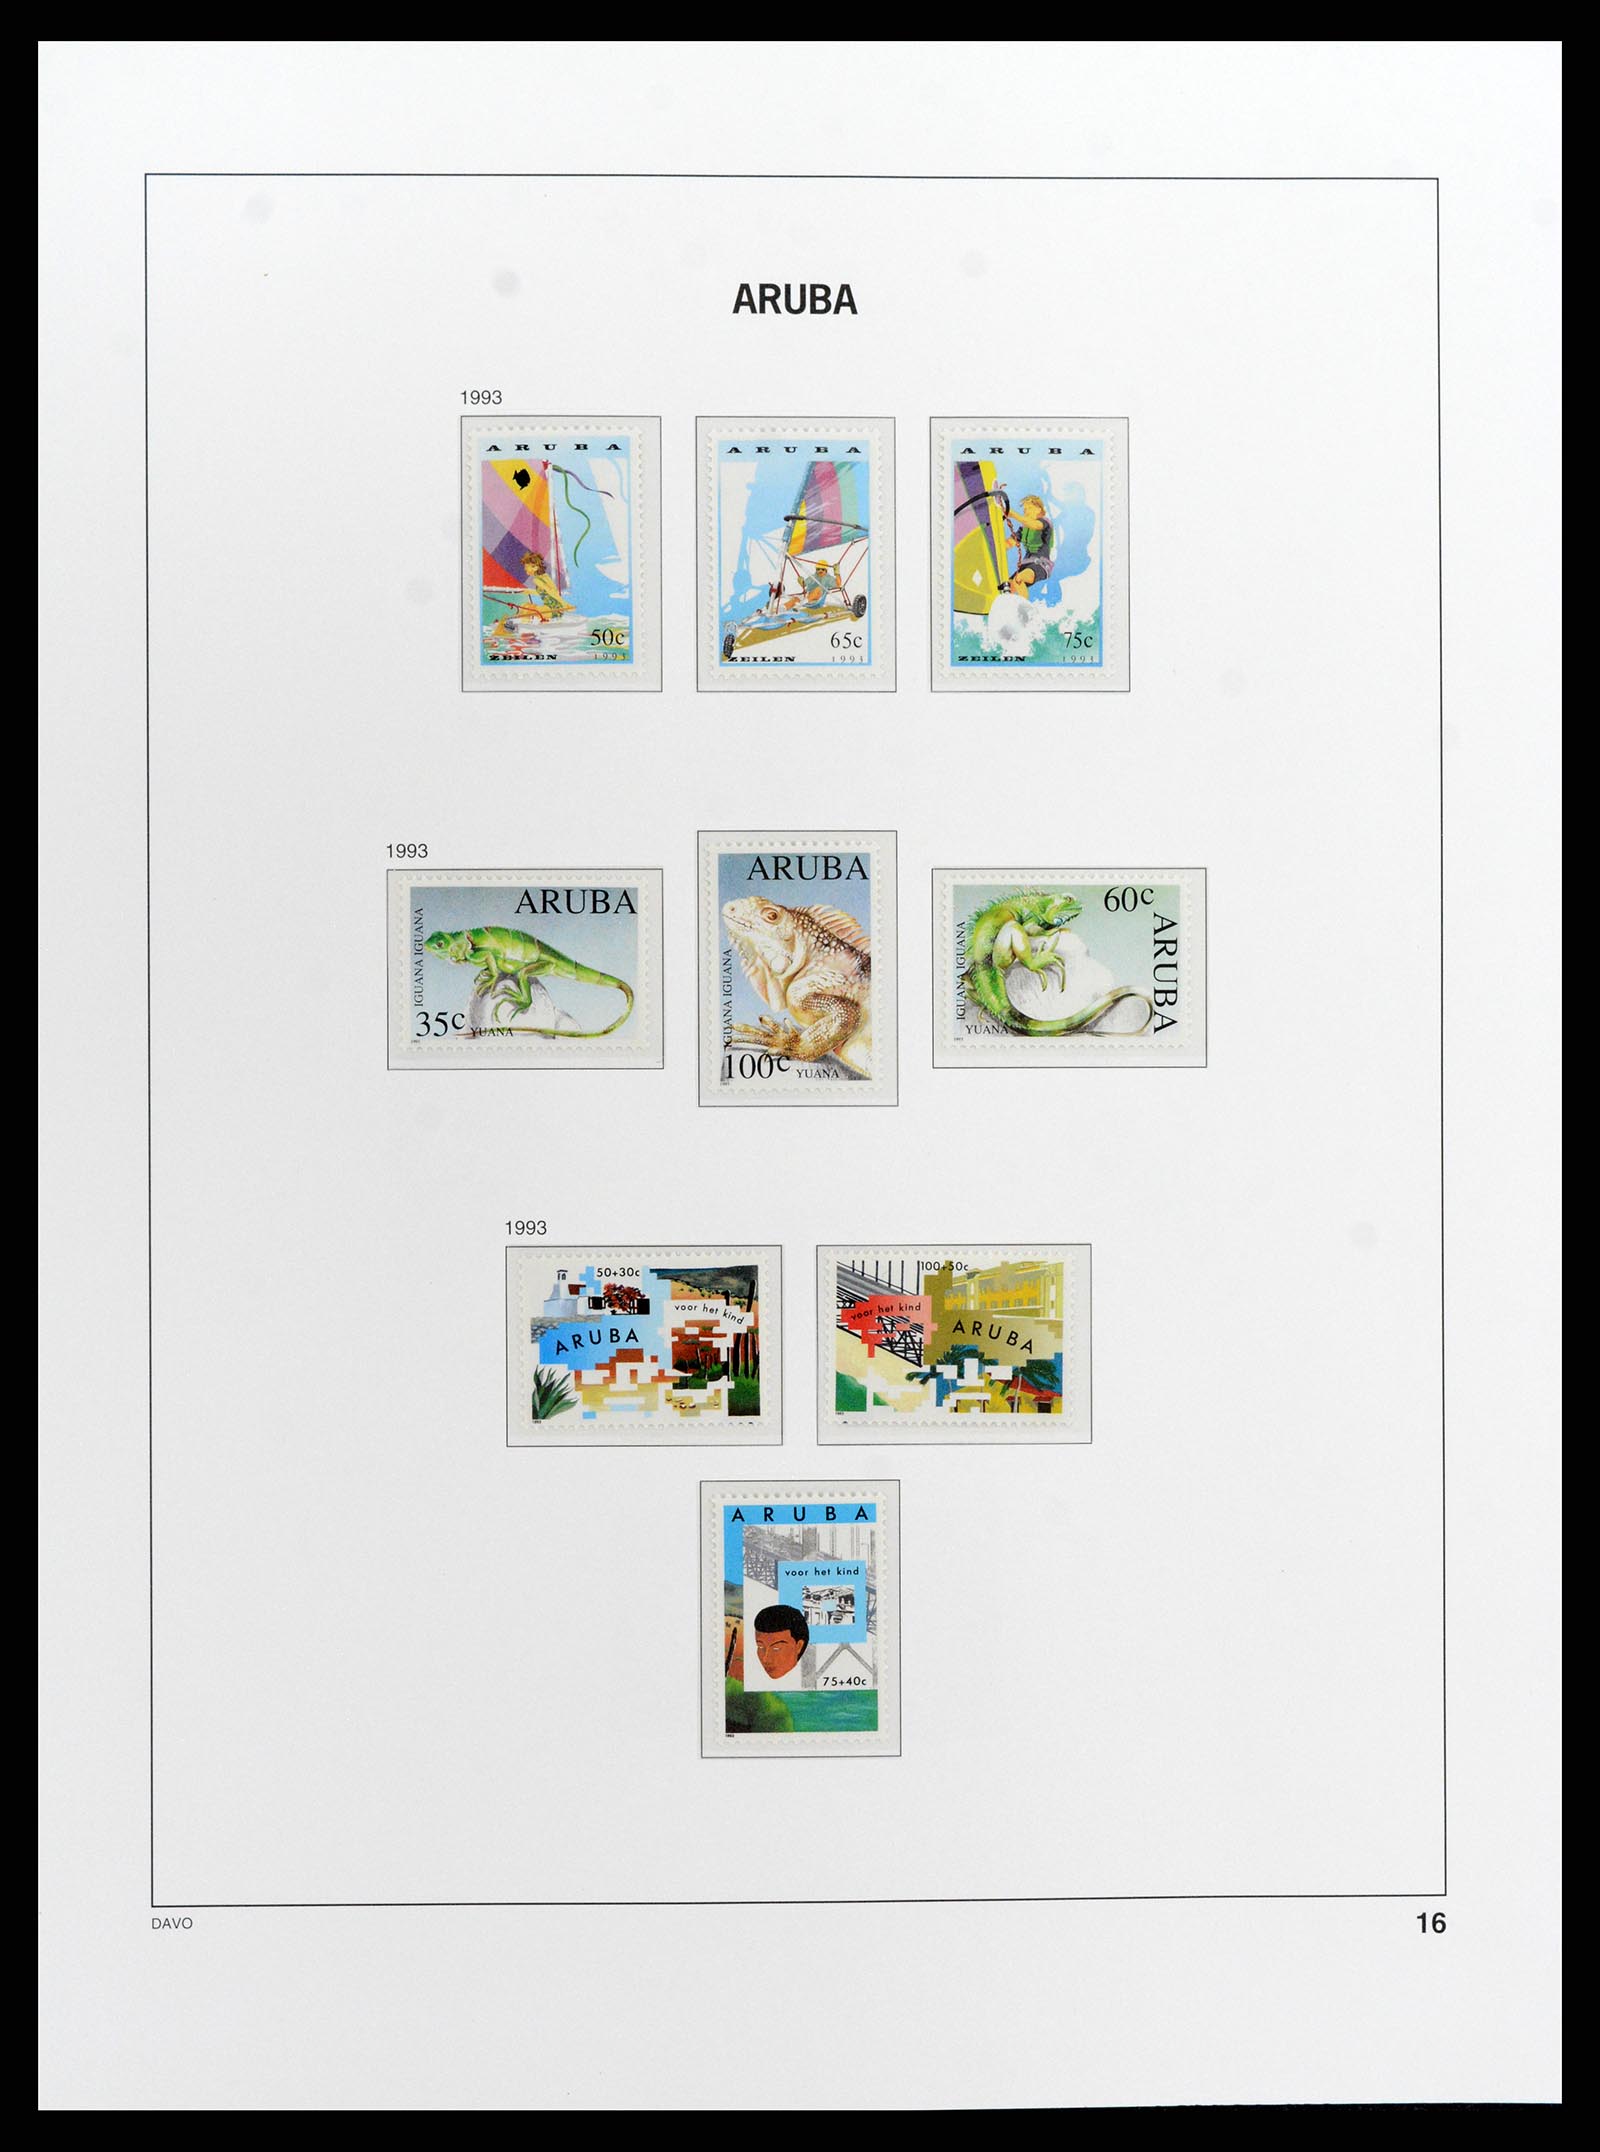 37841 016 - Stamp Collection 37841 Aruba 1986-2011.